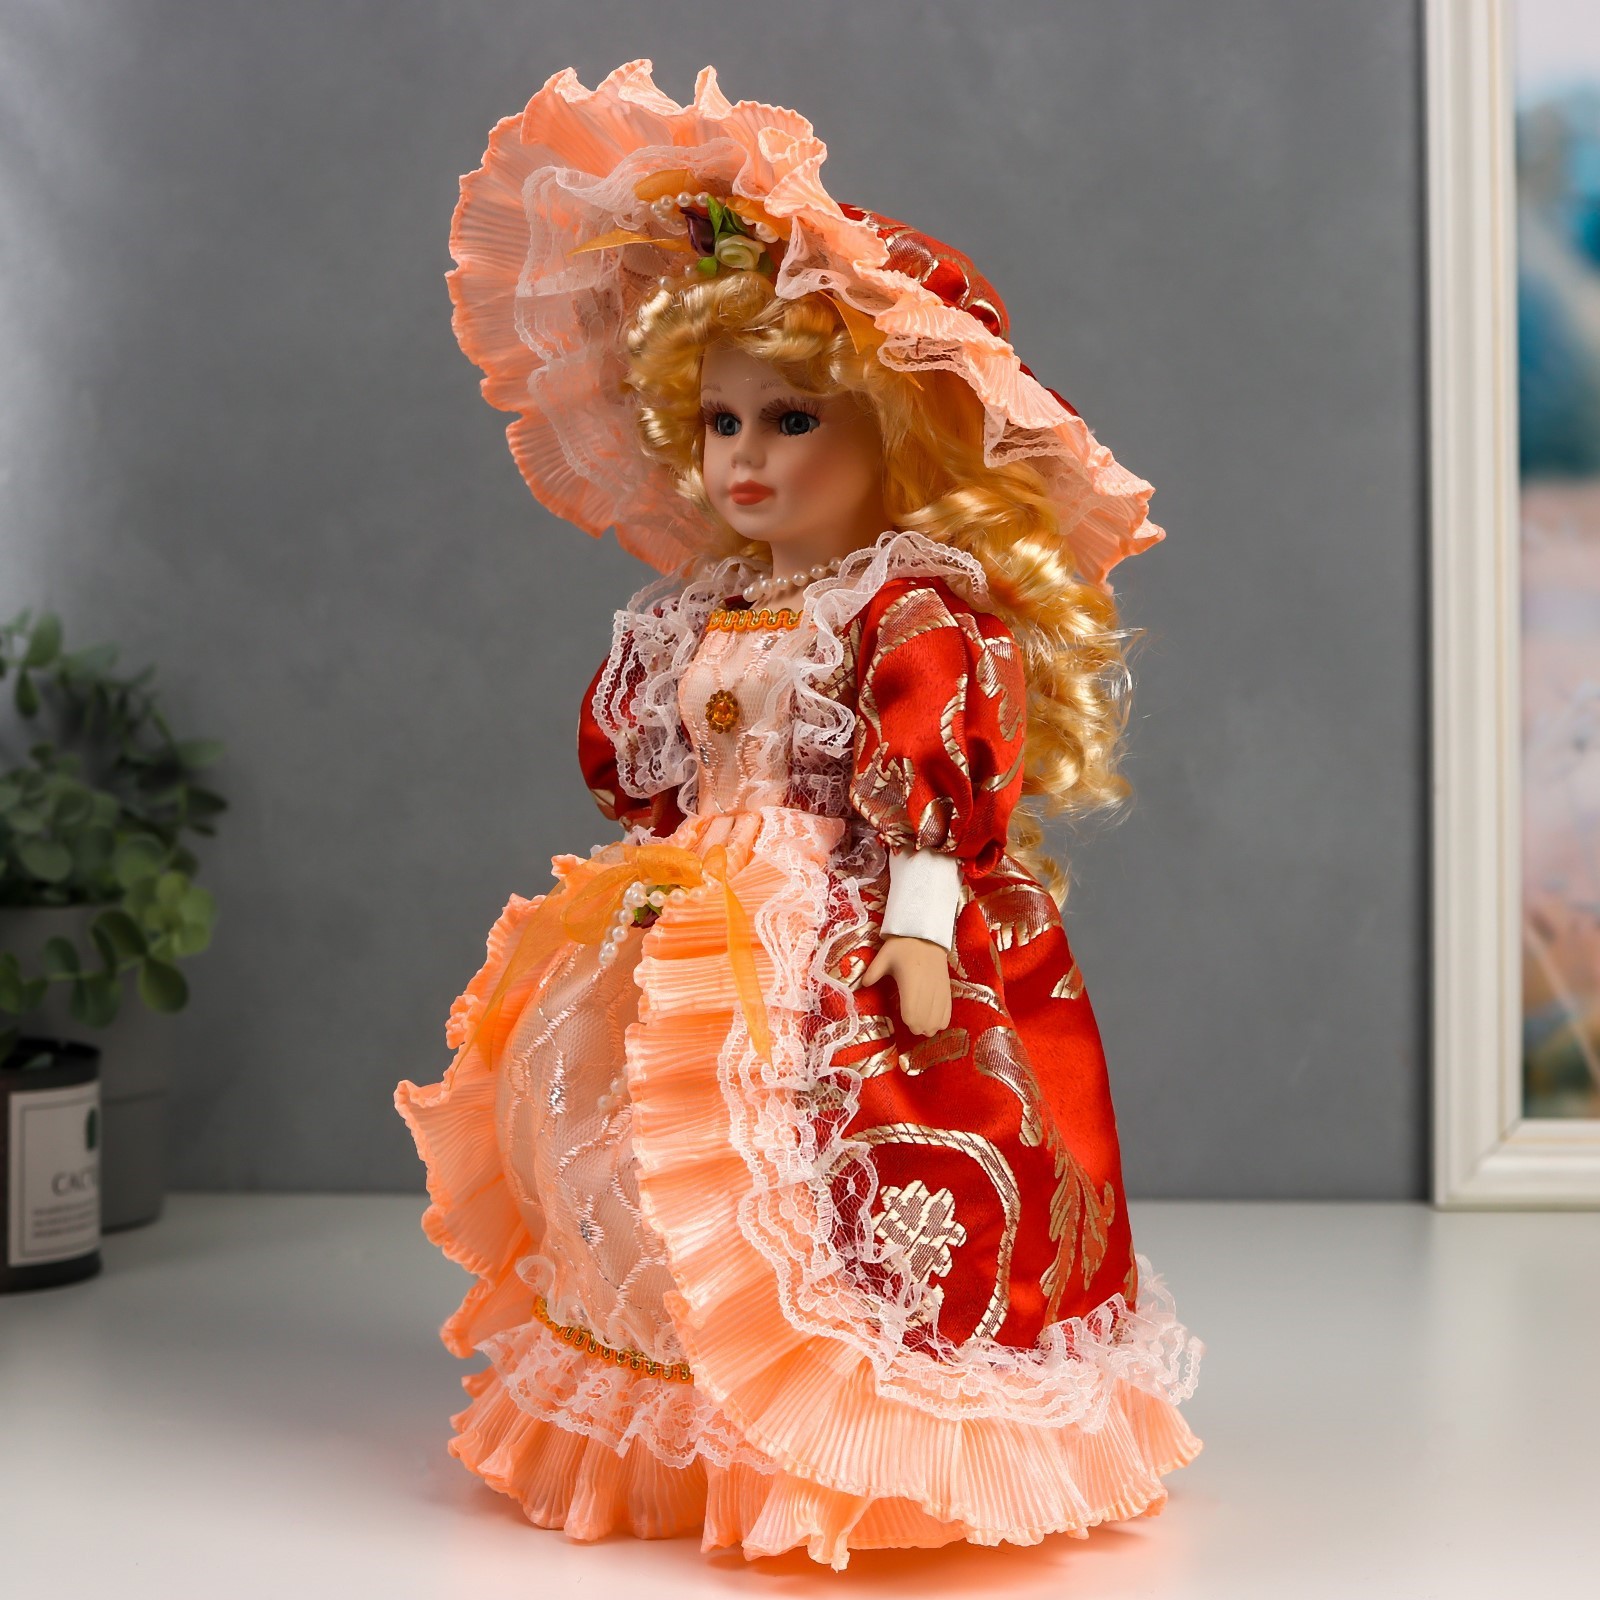 Кукла коллекционная Зимнее волшебство керамика «Леди Анастасия в красно-оранжевом платье » 30 см - фото 2